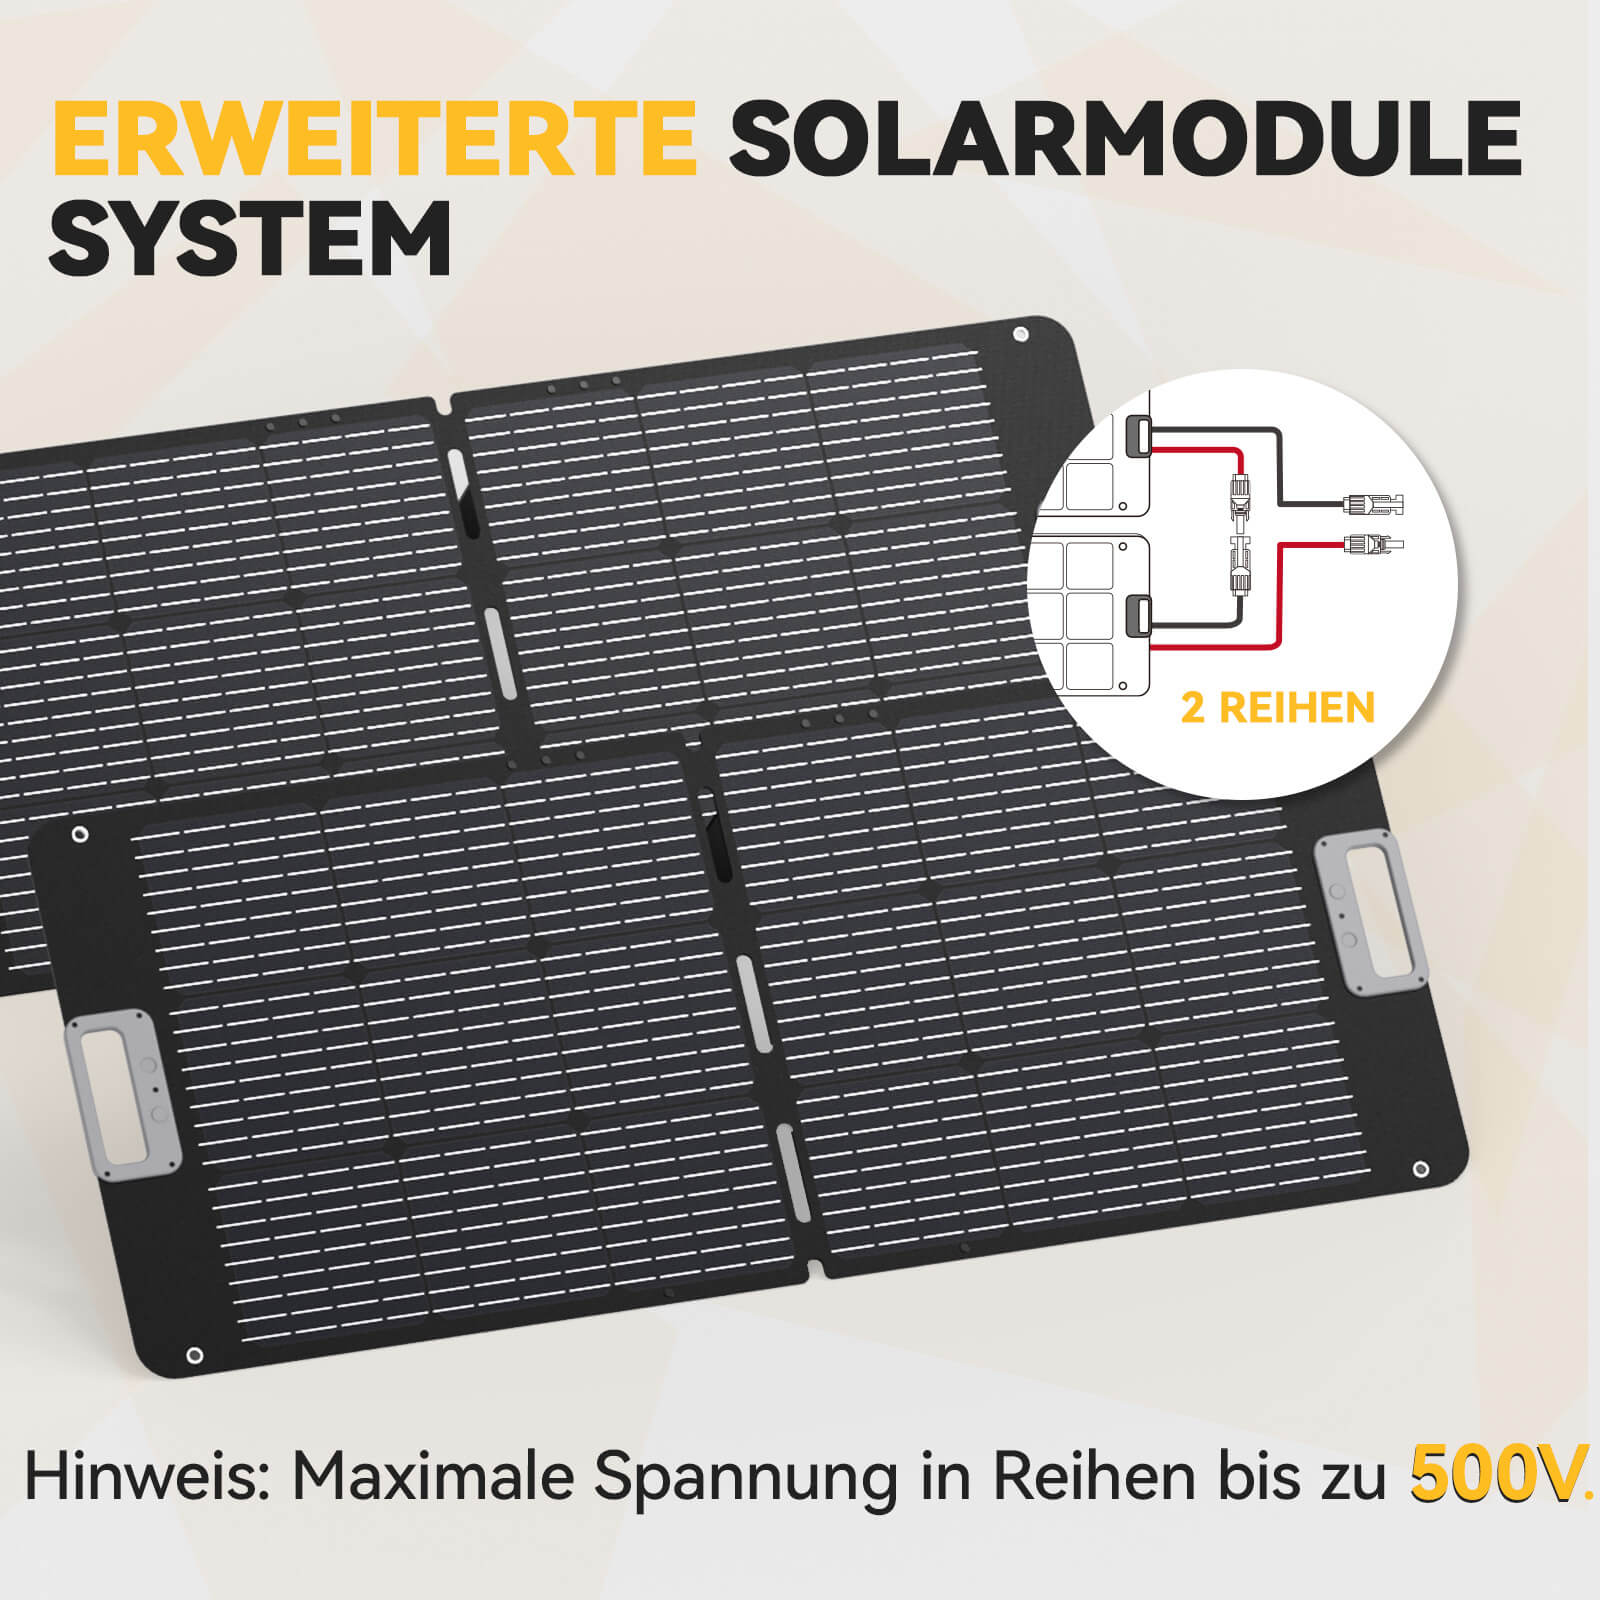 Power Queen 100W tragbares Solarpanel für P300 tragbare Powerstation